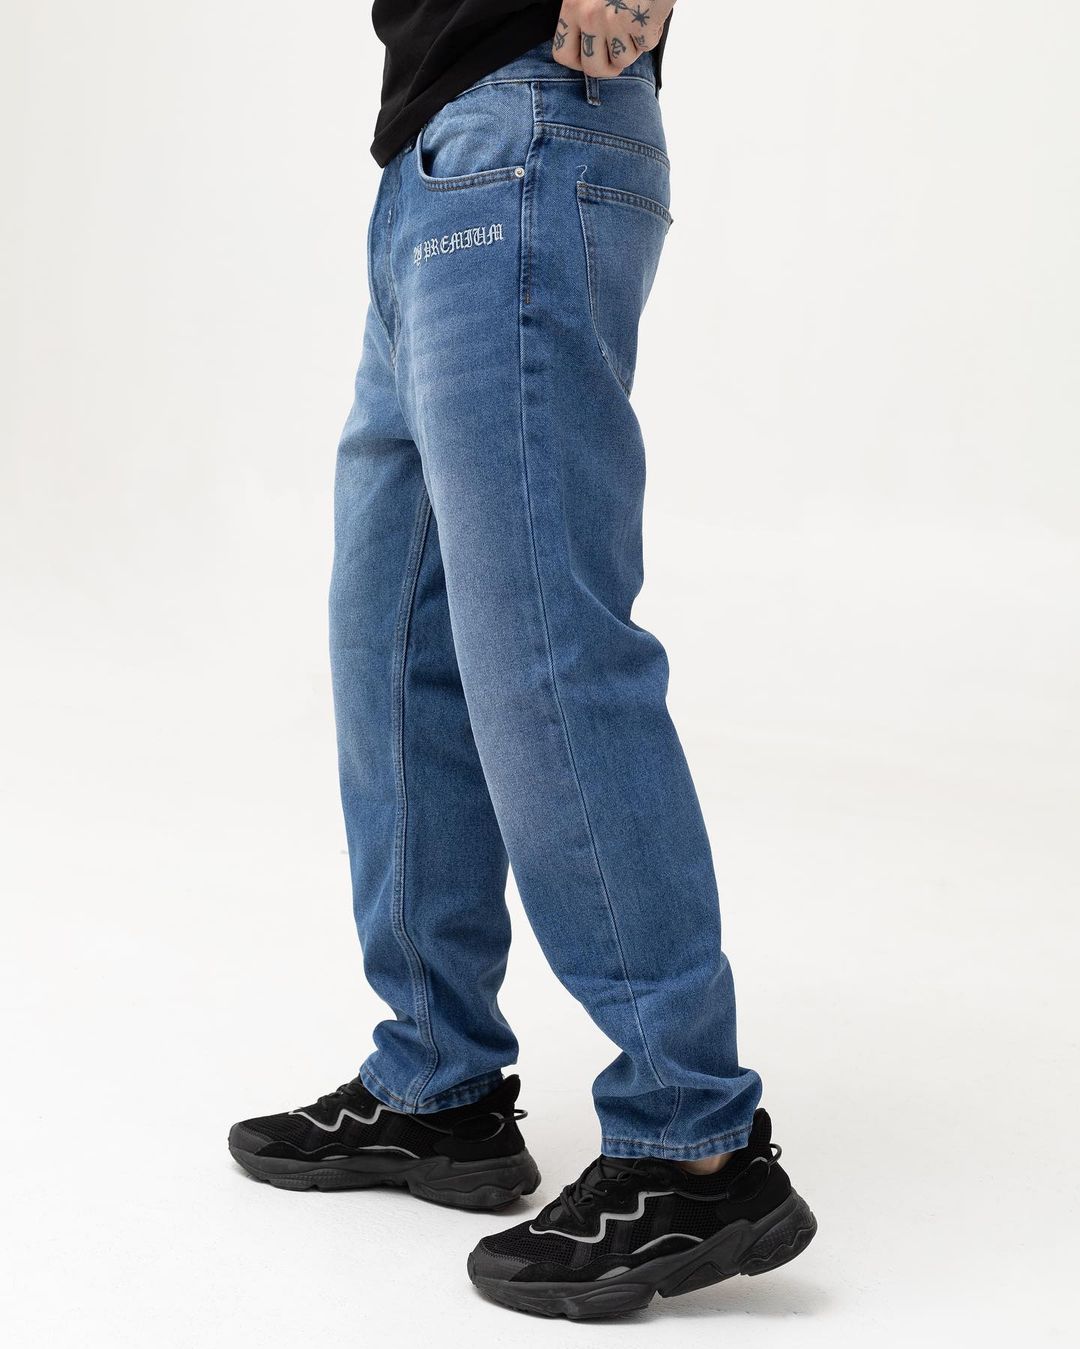 Чоловічі сині джинси BEZET базові з вишивкою - Фото 2